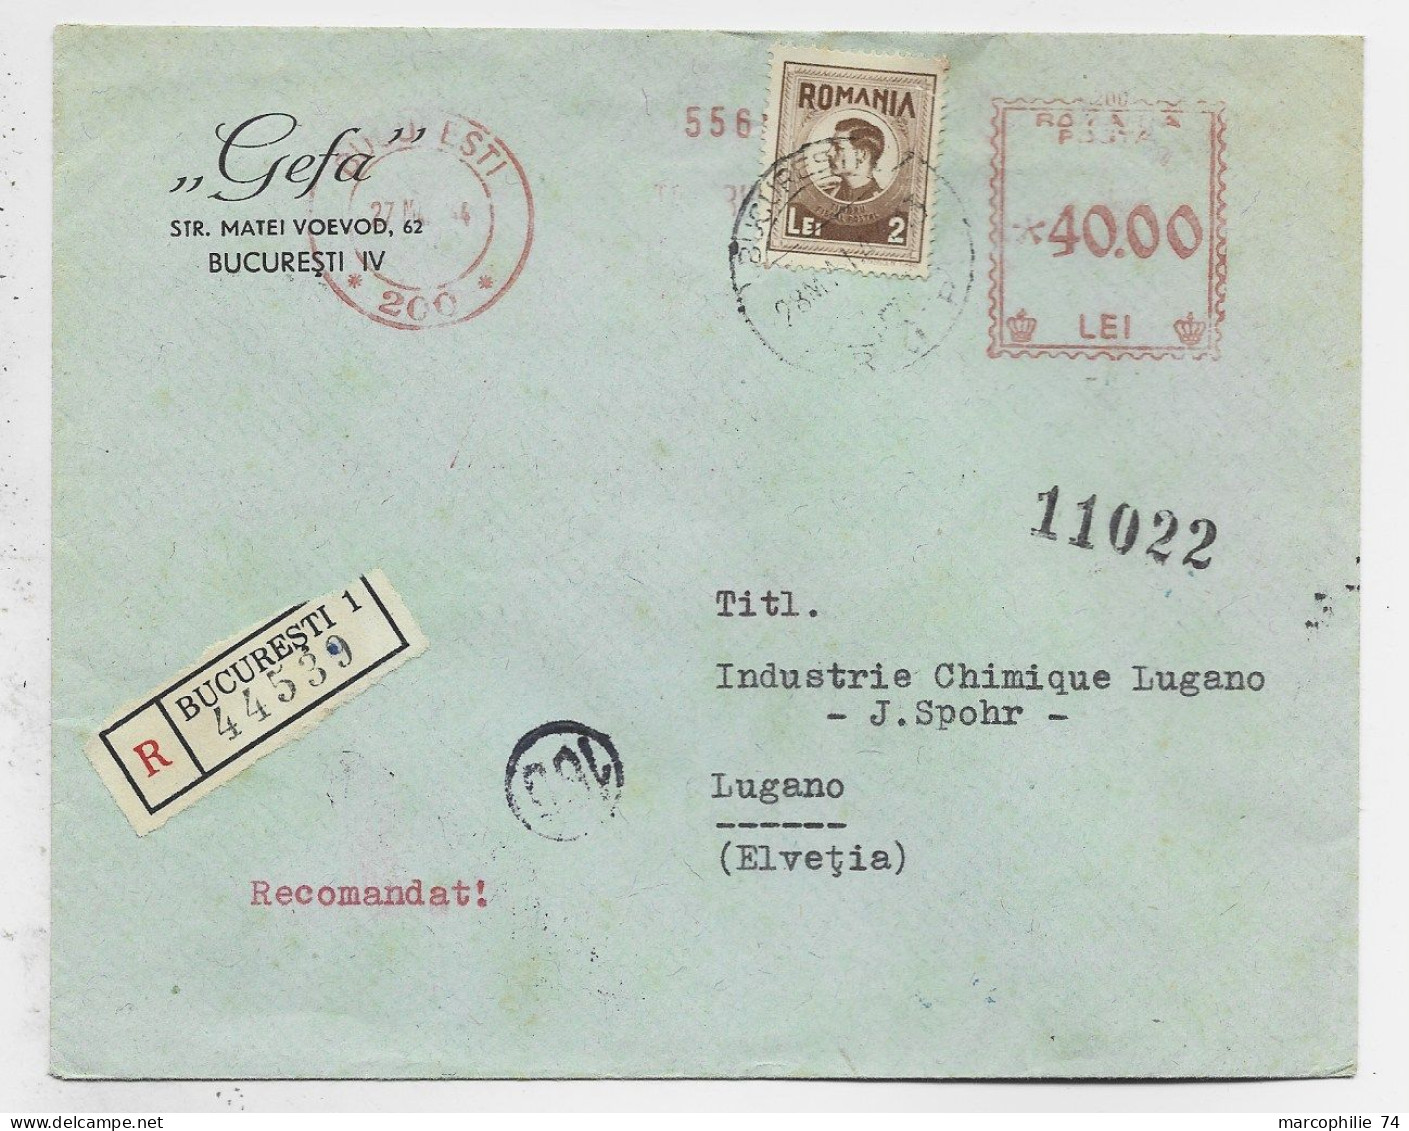 ROMANIA ROUMANIE 2 LEI + EMA 40.00 LETTRE REC COVER BUCURESTI 1944 LUGANO PREGASSONA SUISSE ZENZURAT - Lettres & Documents